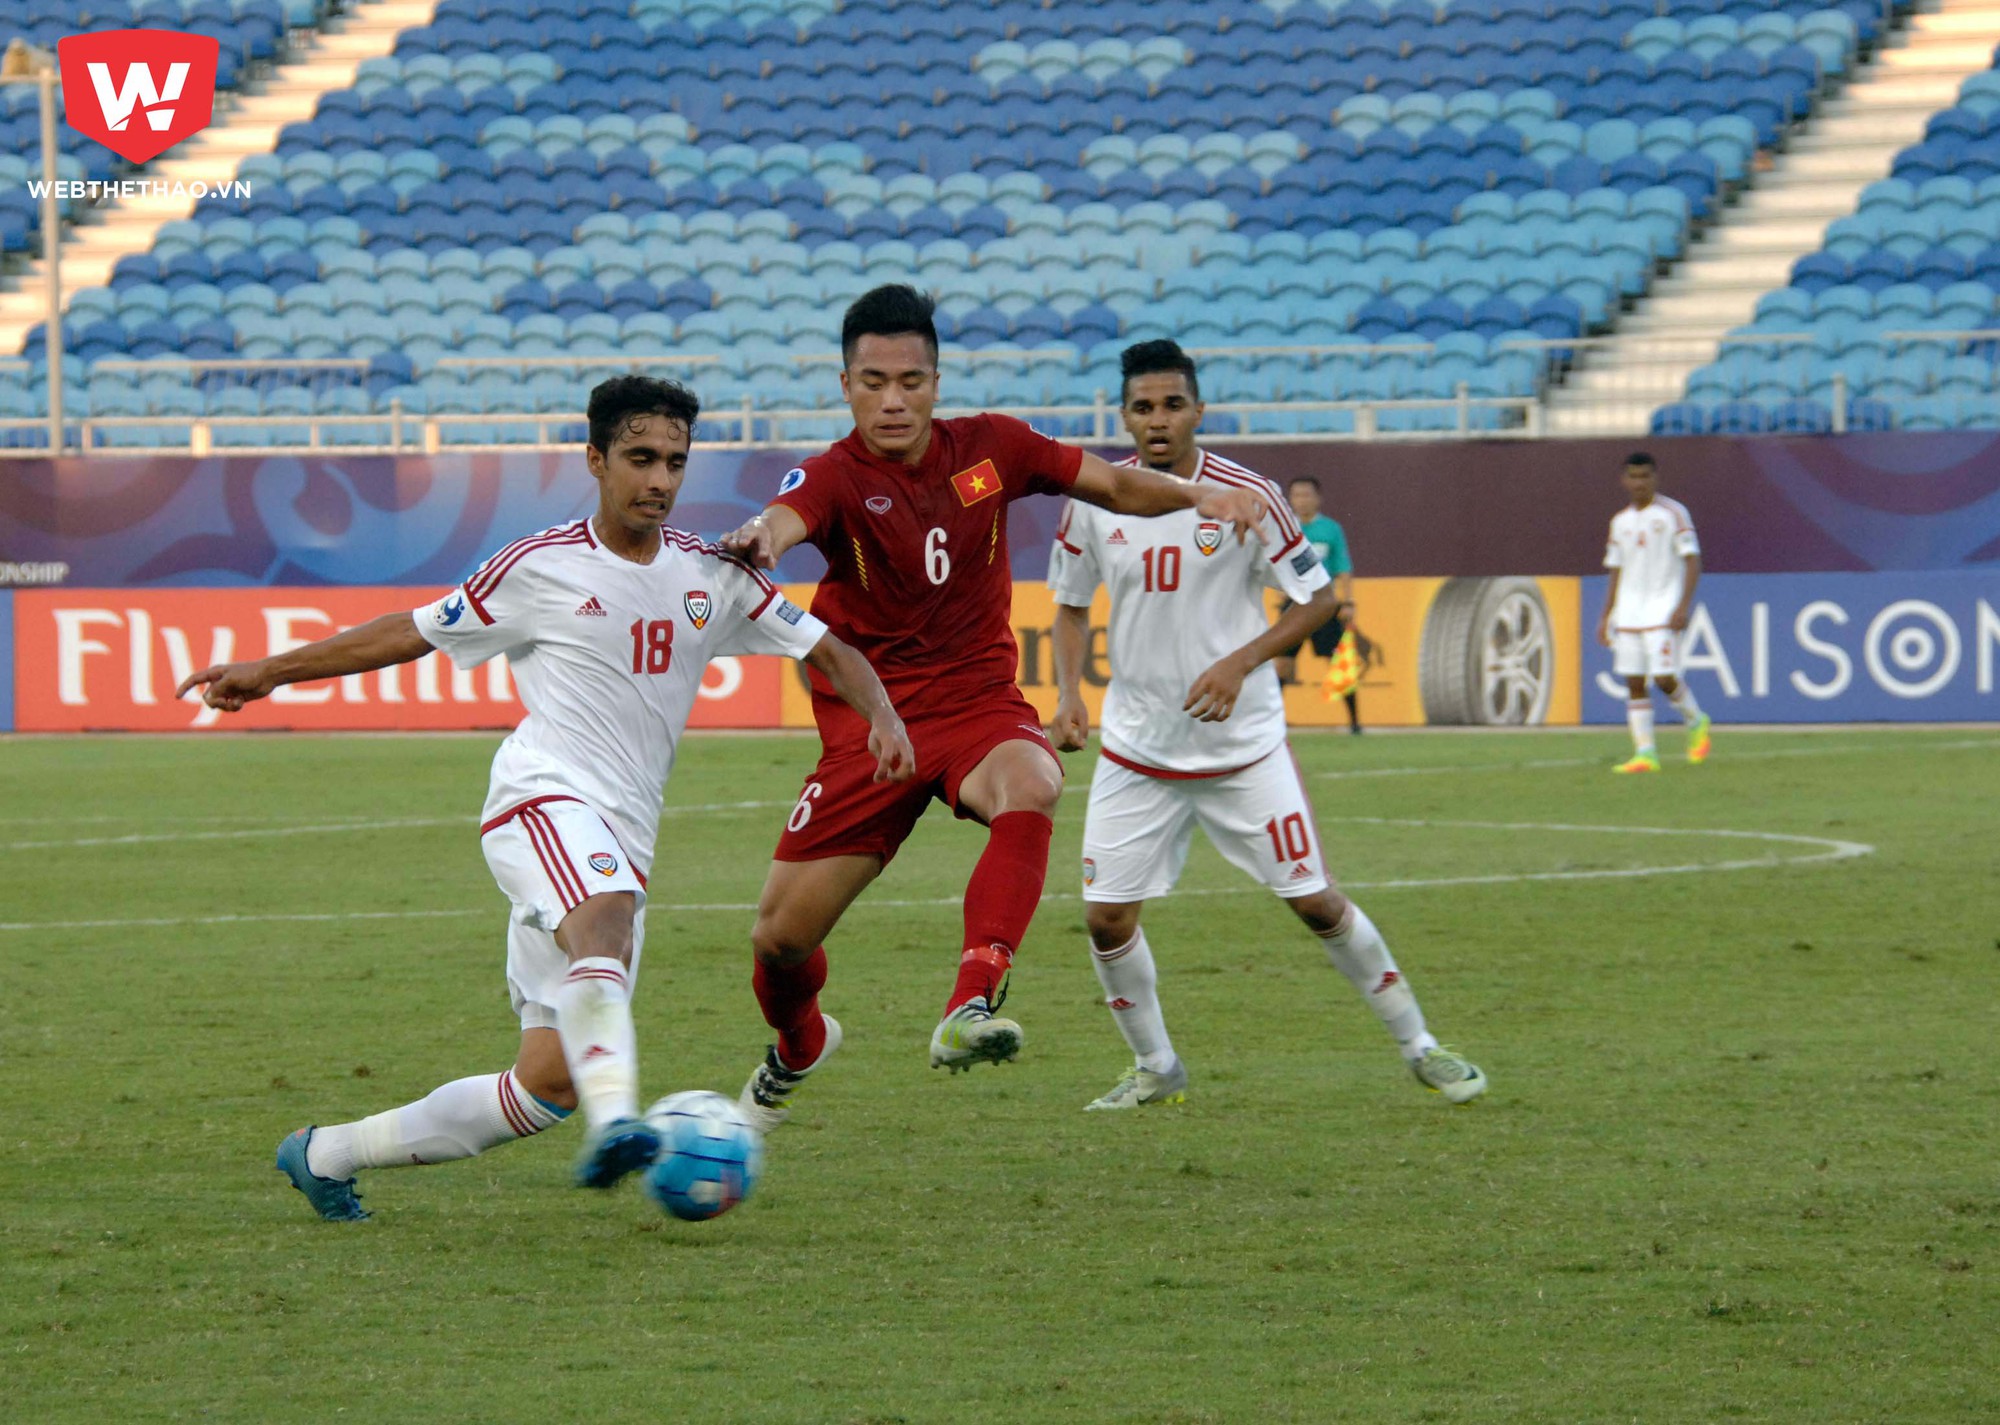 HLV Hoàng Anh Tuấn cho rằng U.19 Việt Nam (áo đỏ) chơi không tốt ở trận đấu hôm nay.